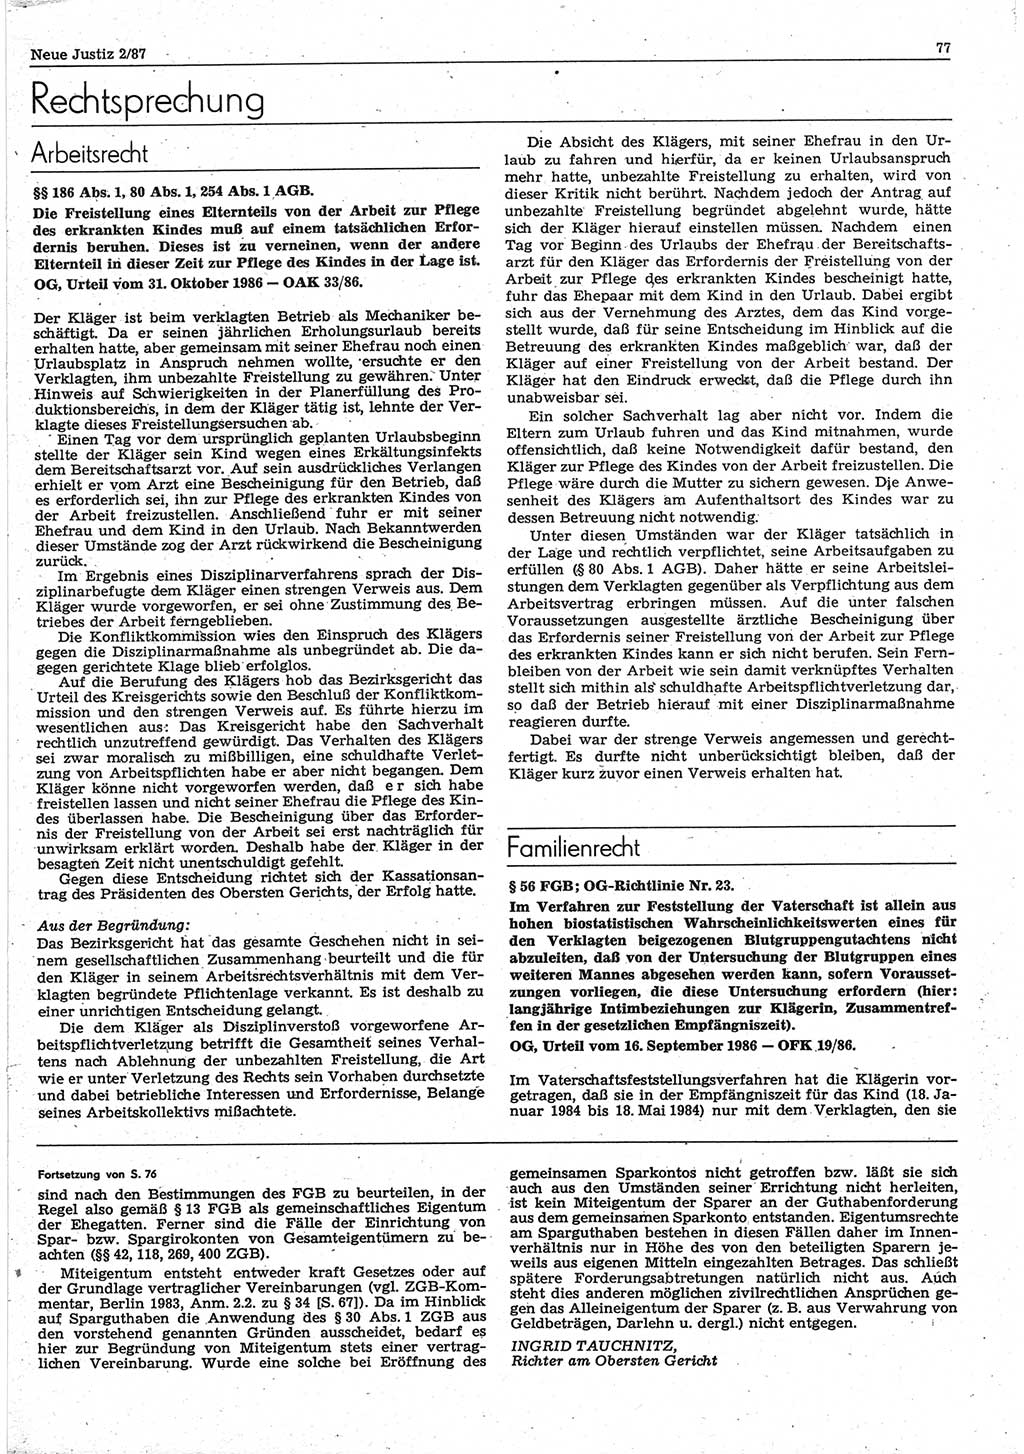 Neue Justiz (NJ), Zeitschrift für sozialistisches Recht und Gesetzlichkeit [Deutsche Demokratische Republik (DDR)], 41. Jahrgang 1987, Seite 77 (NJ DDR 1987, S. 77)